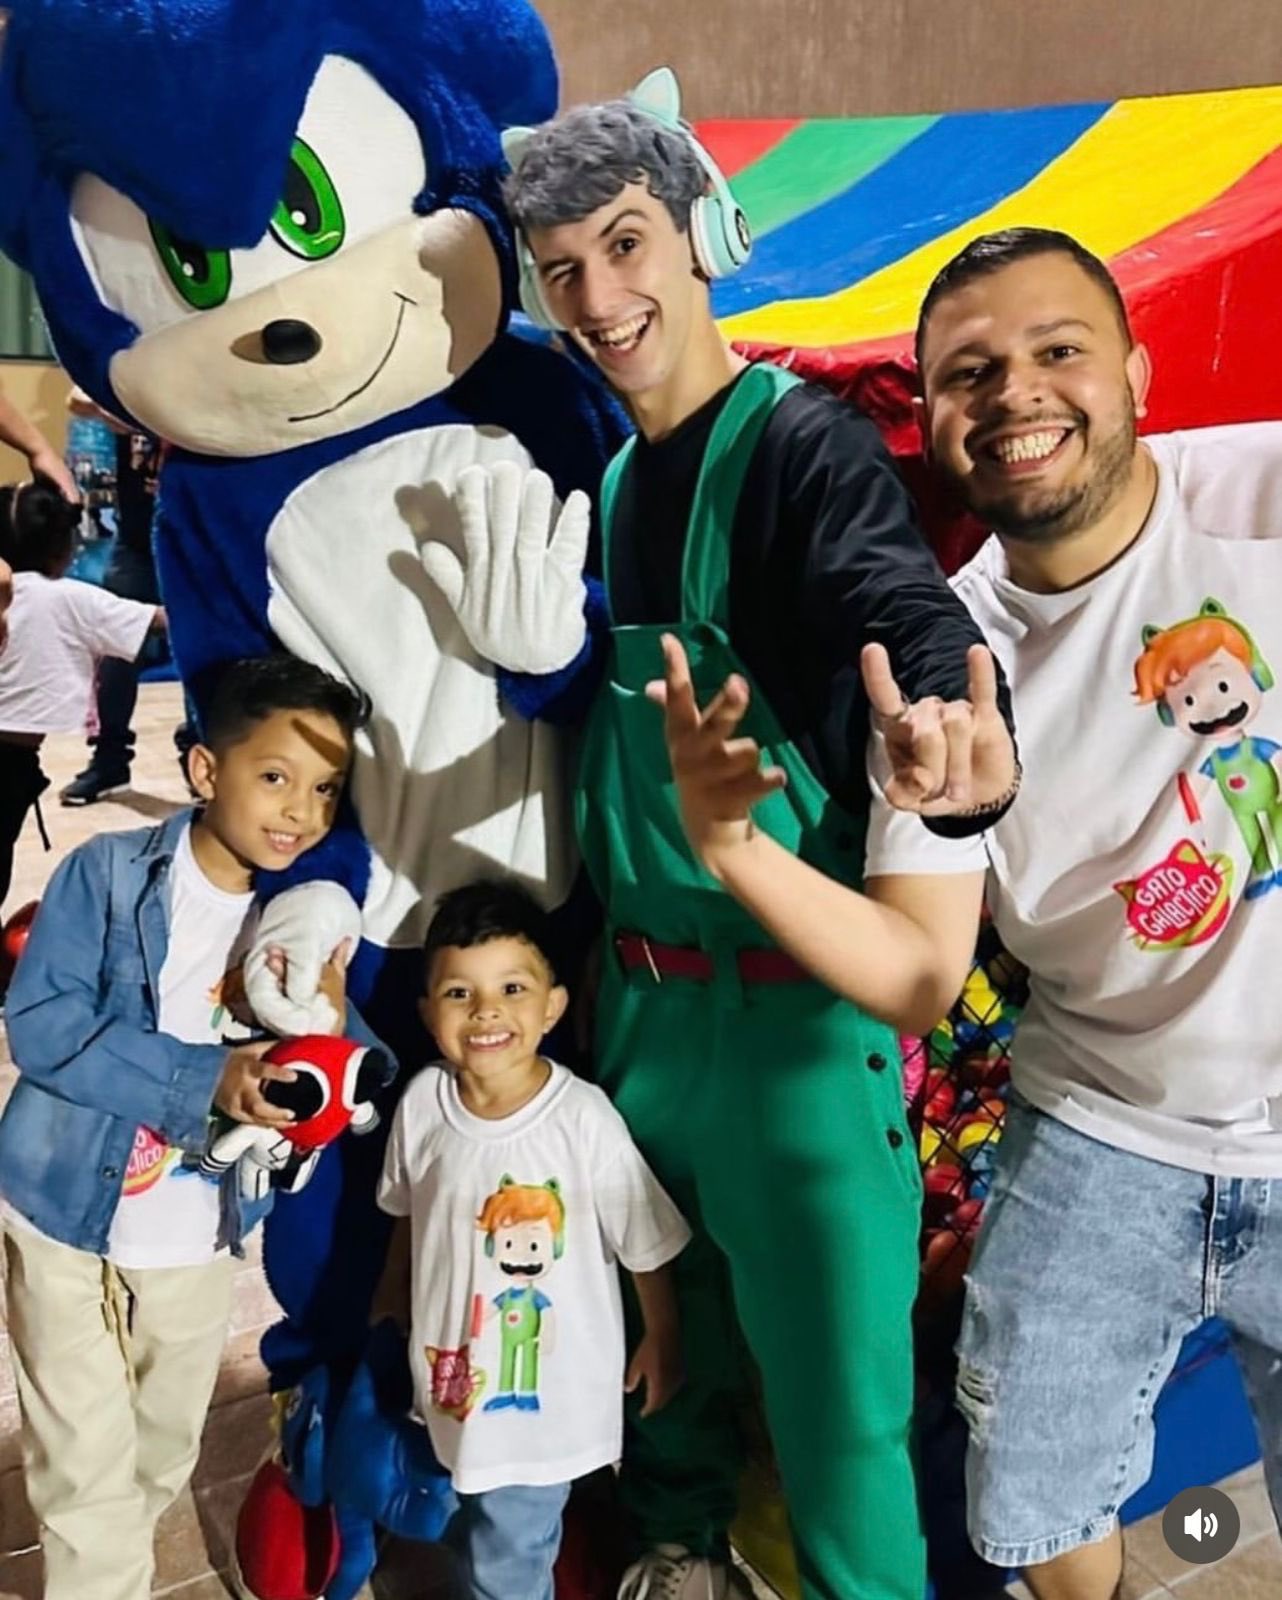 Ronaldo Souza on X: Foi encontrado o Cover do Gato Galáctico fazendo  festas infantis pelo Brasil O que vocês acham disso?   / X